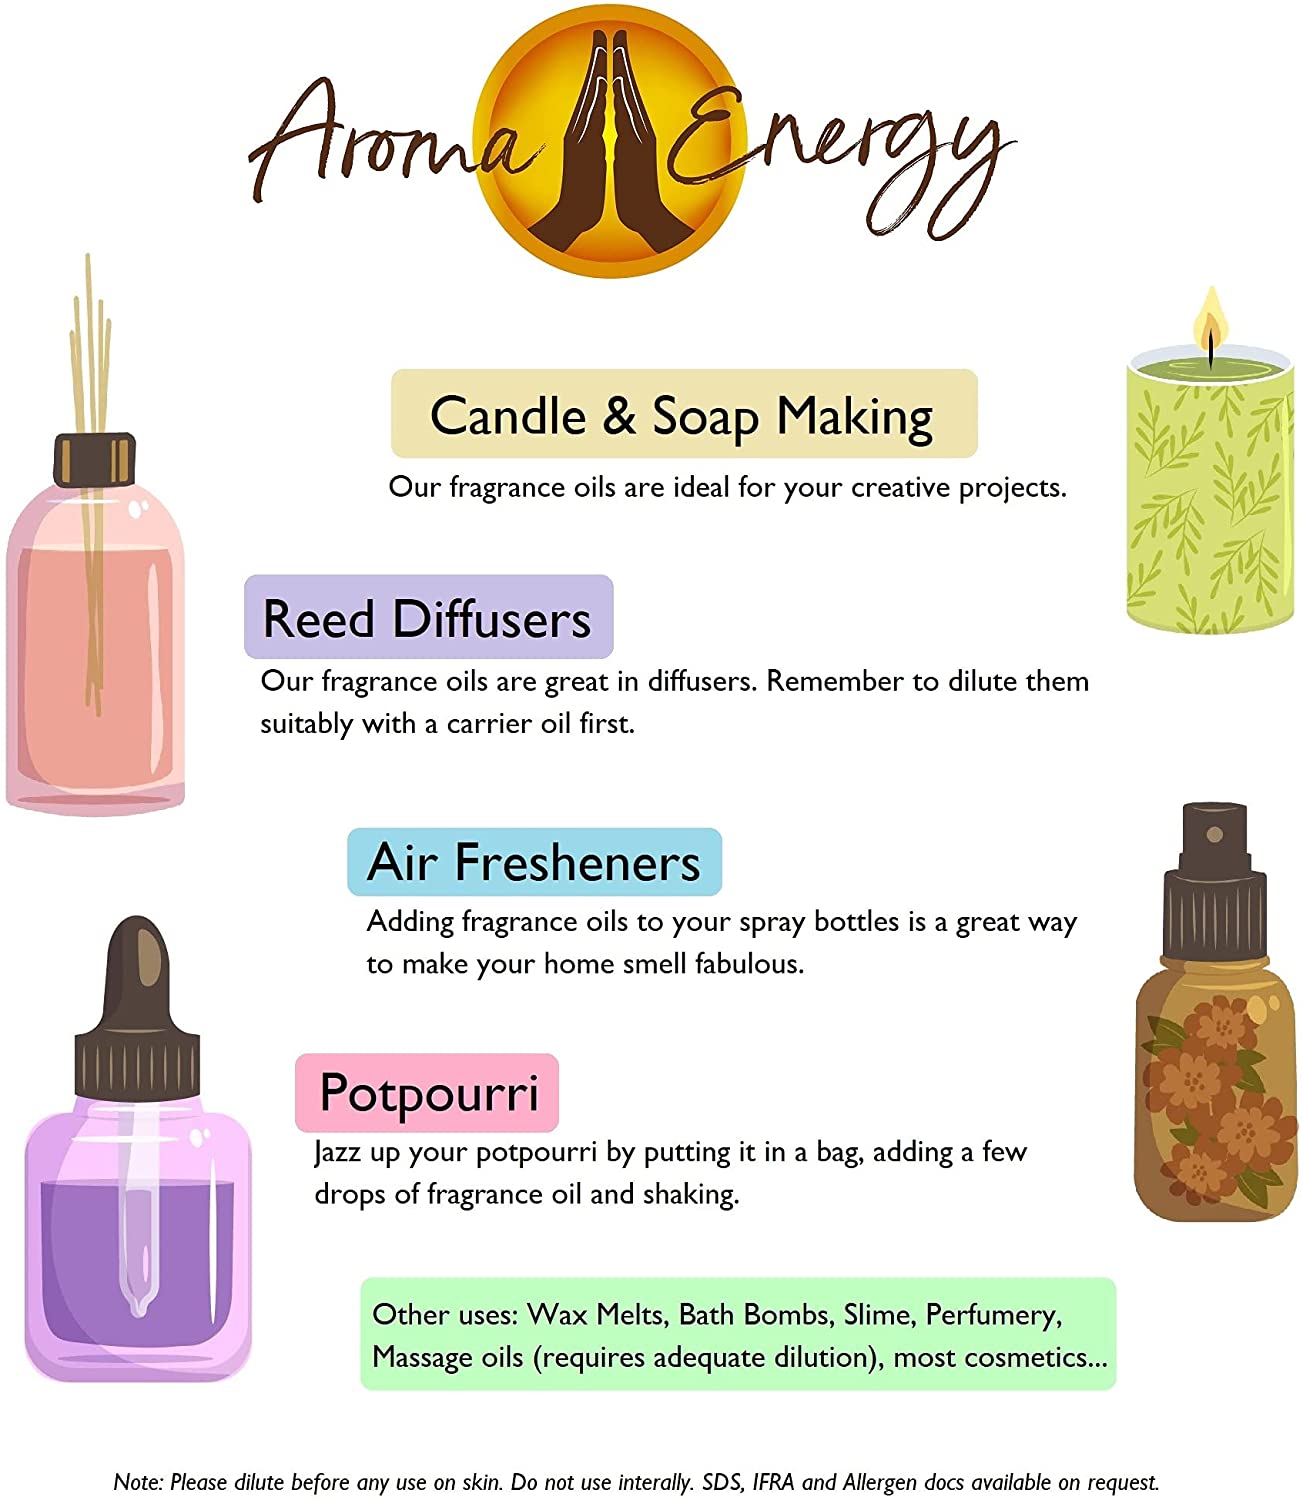 Winter Dusk Fragrance Oil - Aroma Energy